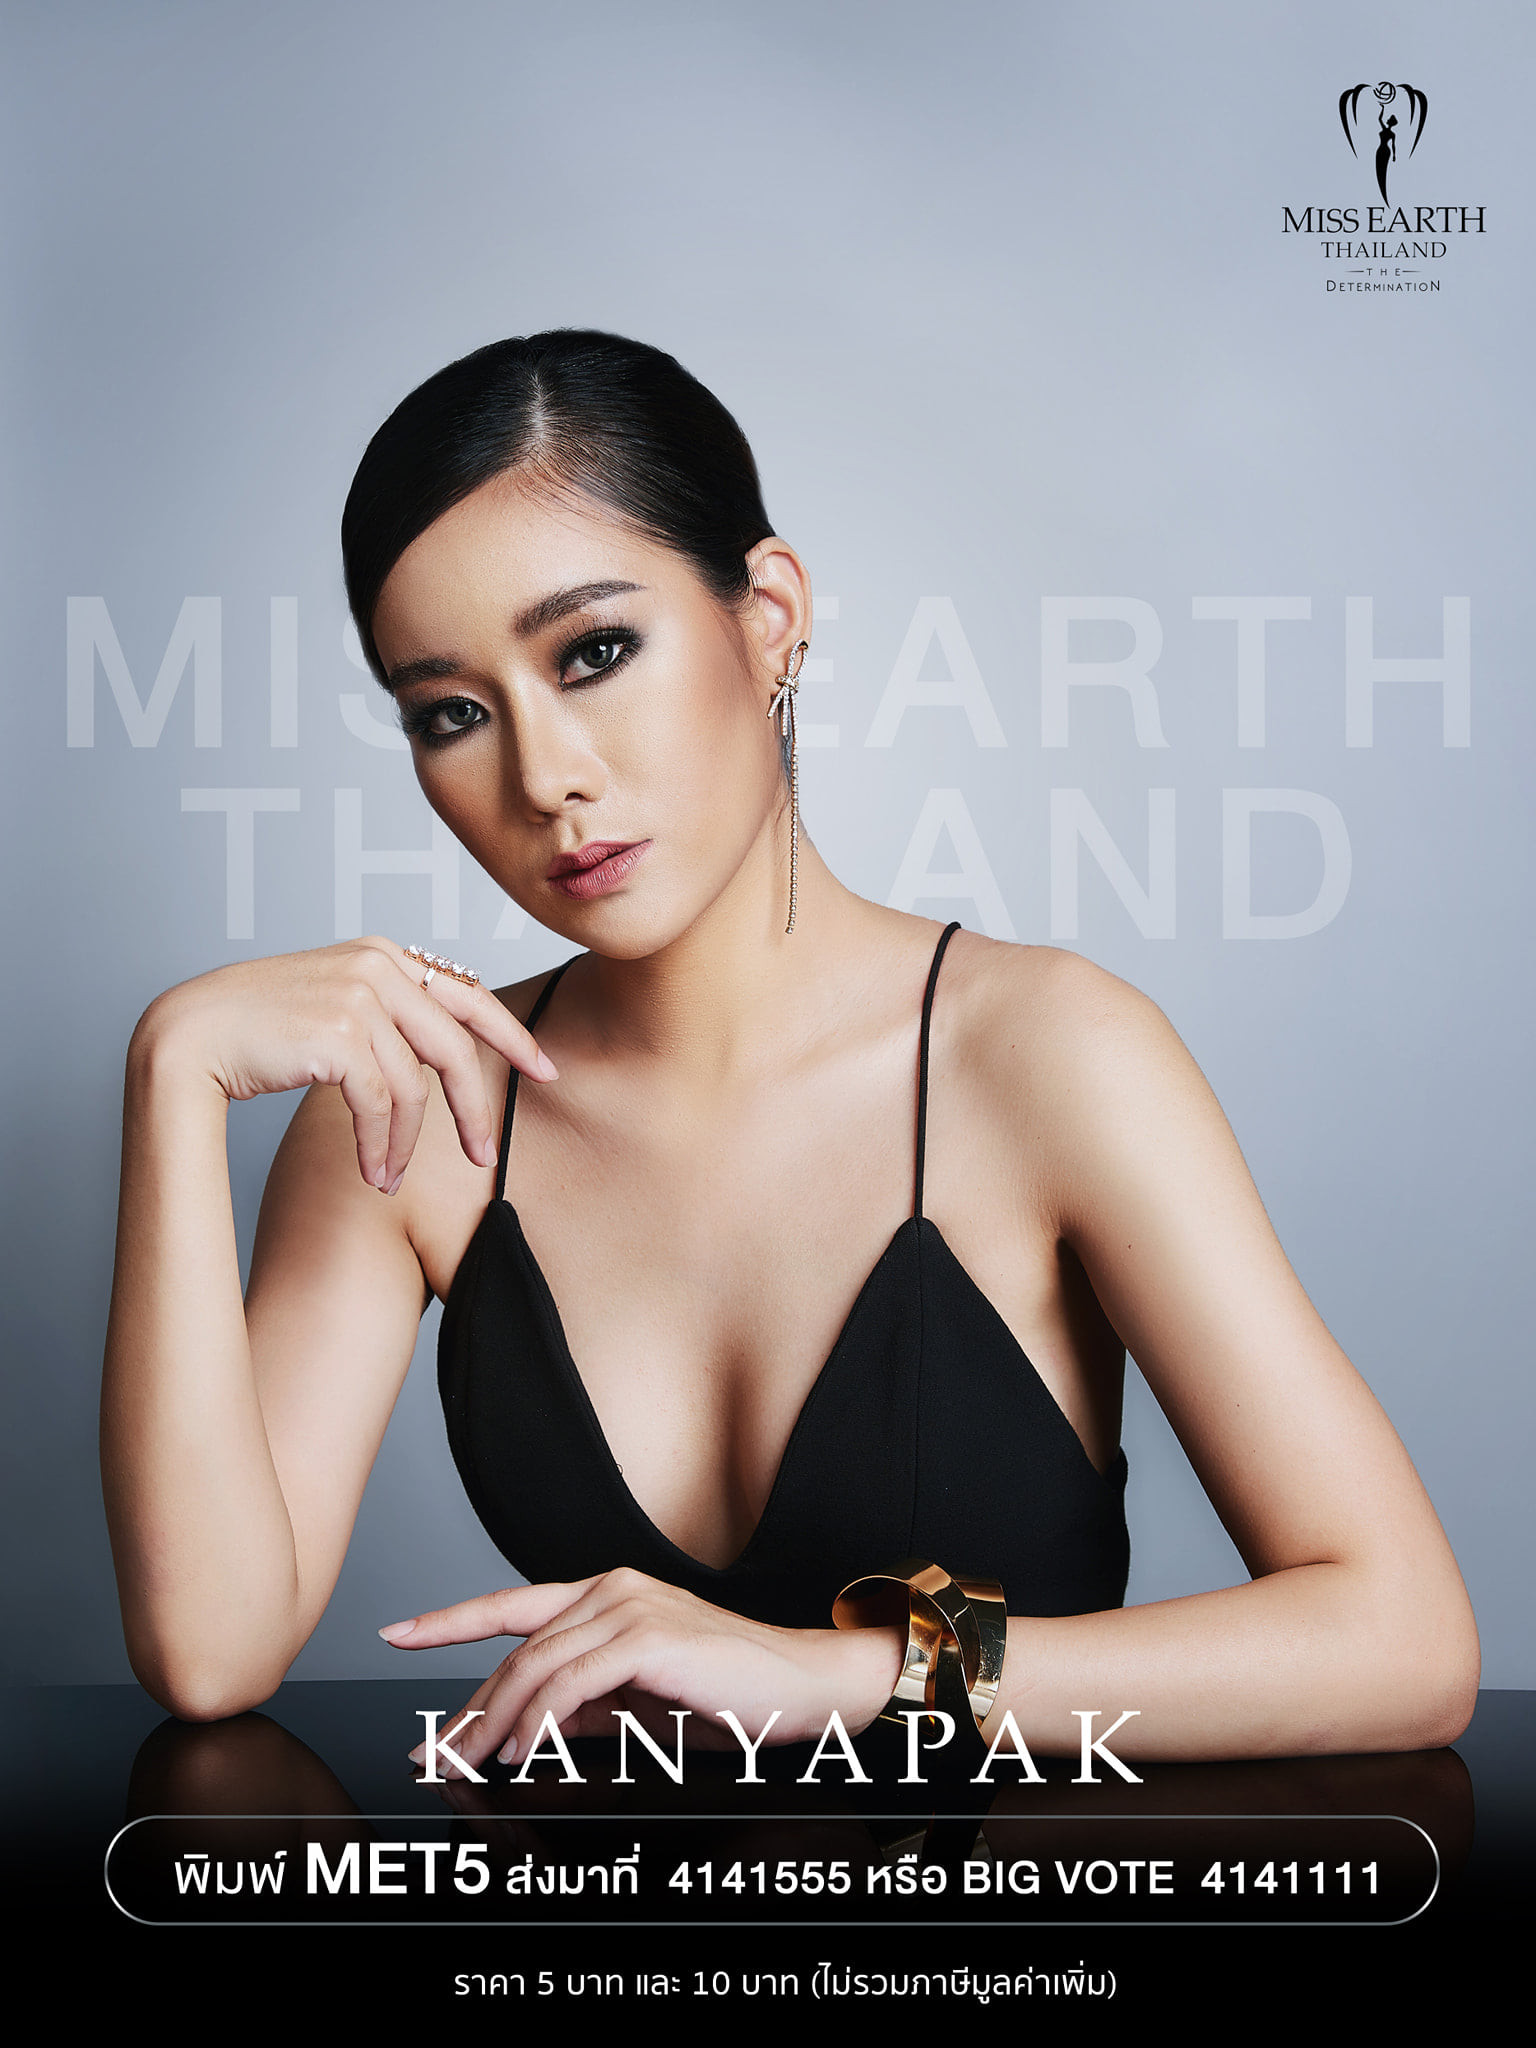 candidatas a miss earth thailand 2021. final: 25 sep. - Página 2 O77oqg